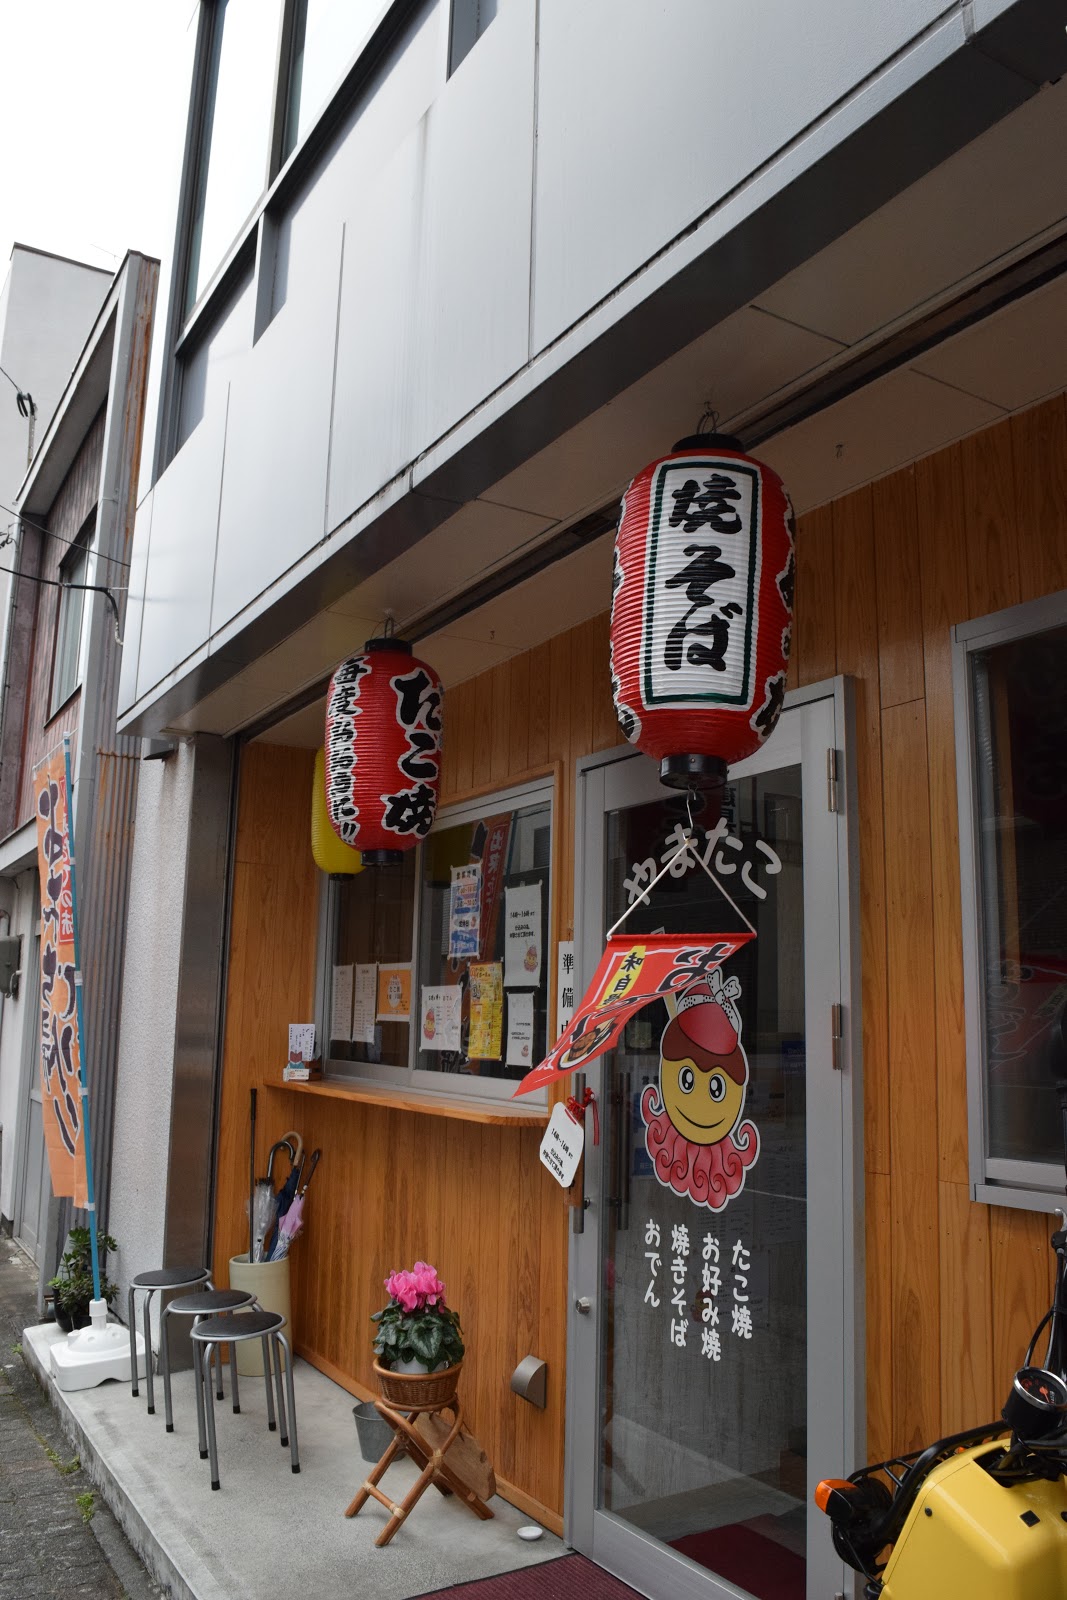 Yakisoba shop in Shizuoka city, Japan